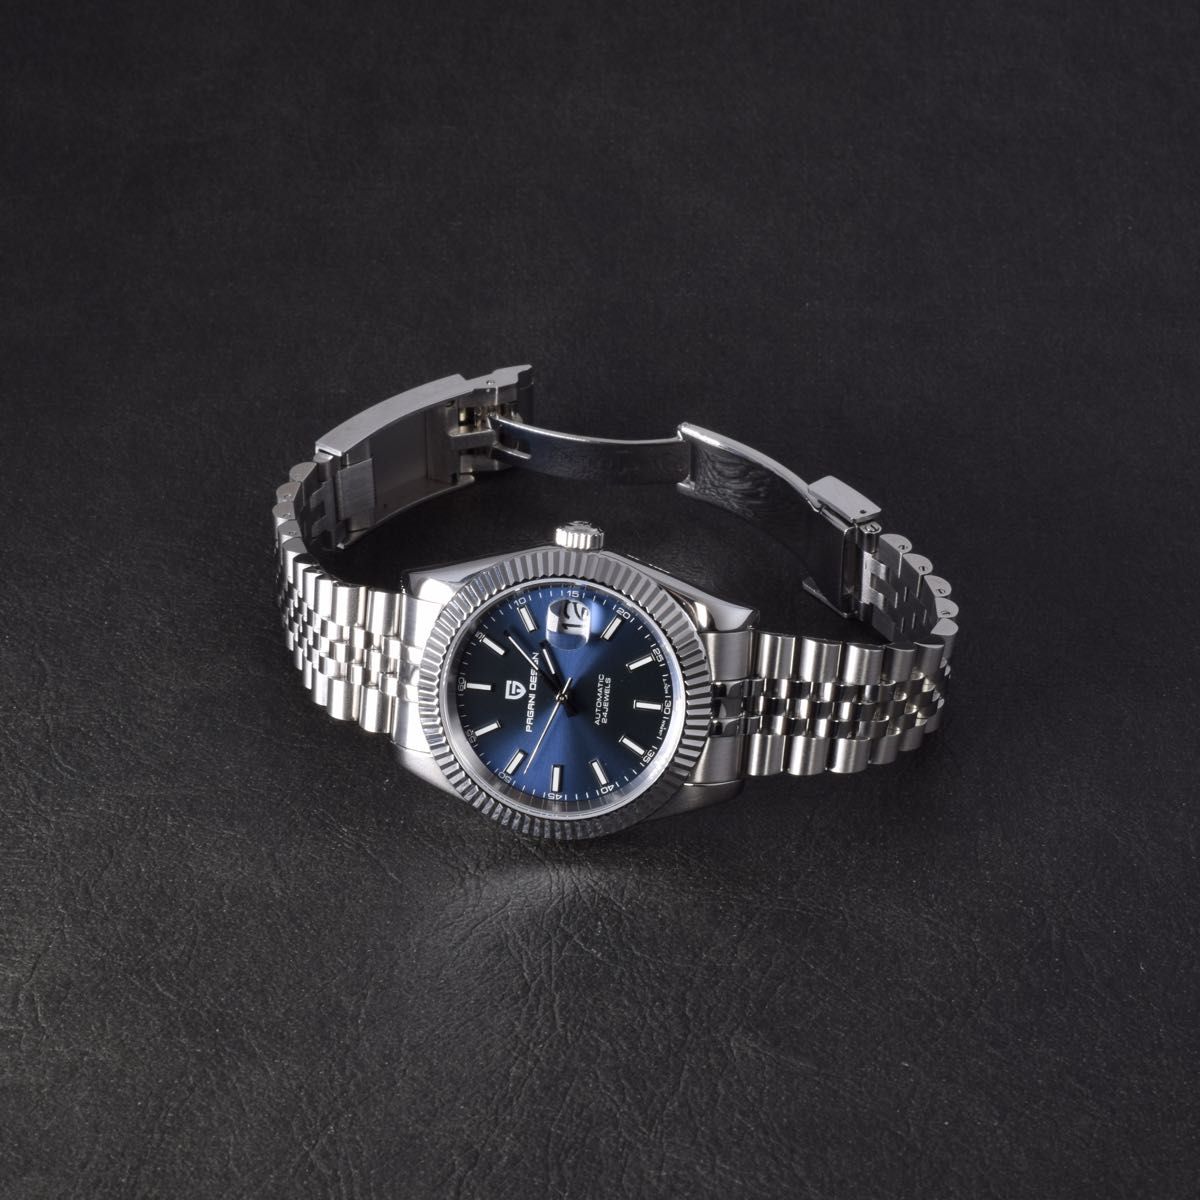 メンズ 腕時計 デイト シルバー シック クラシック 機械式 自動巻 ブルー ROLEX ロレックス デイトジャスト オマージュ